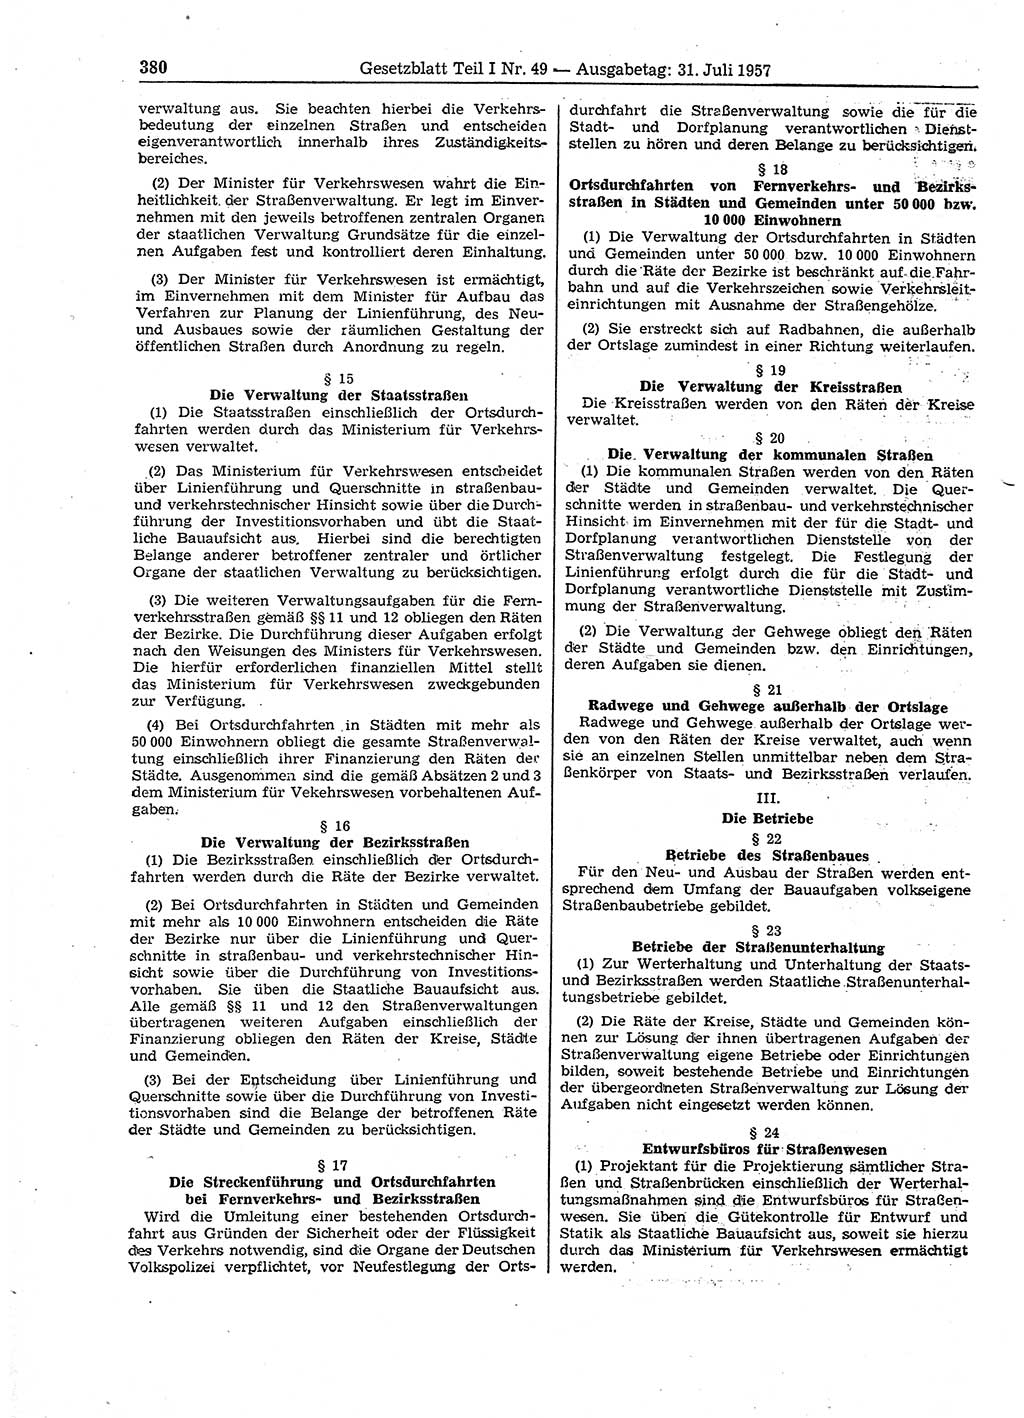 Gesetzblatt (GBl.) der Deutschen Demokratischen Republik (DDR) Teil Ⅰ 1957, Seite 380 (GBl. DDR Ⅰ 1957, S. 380)